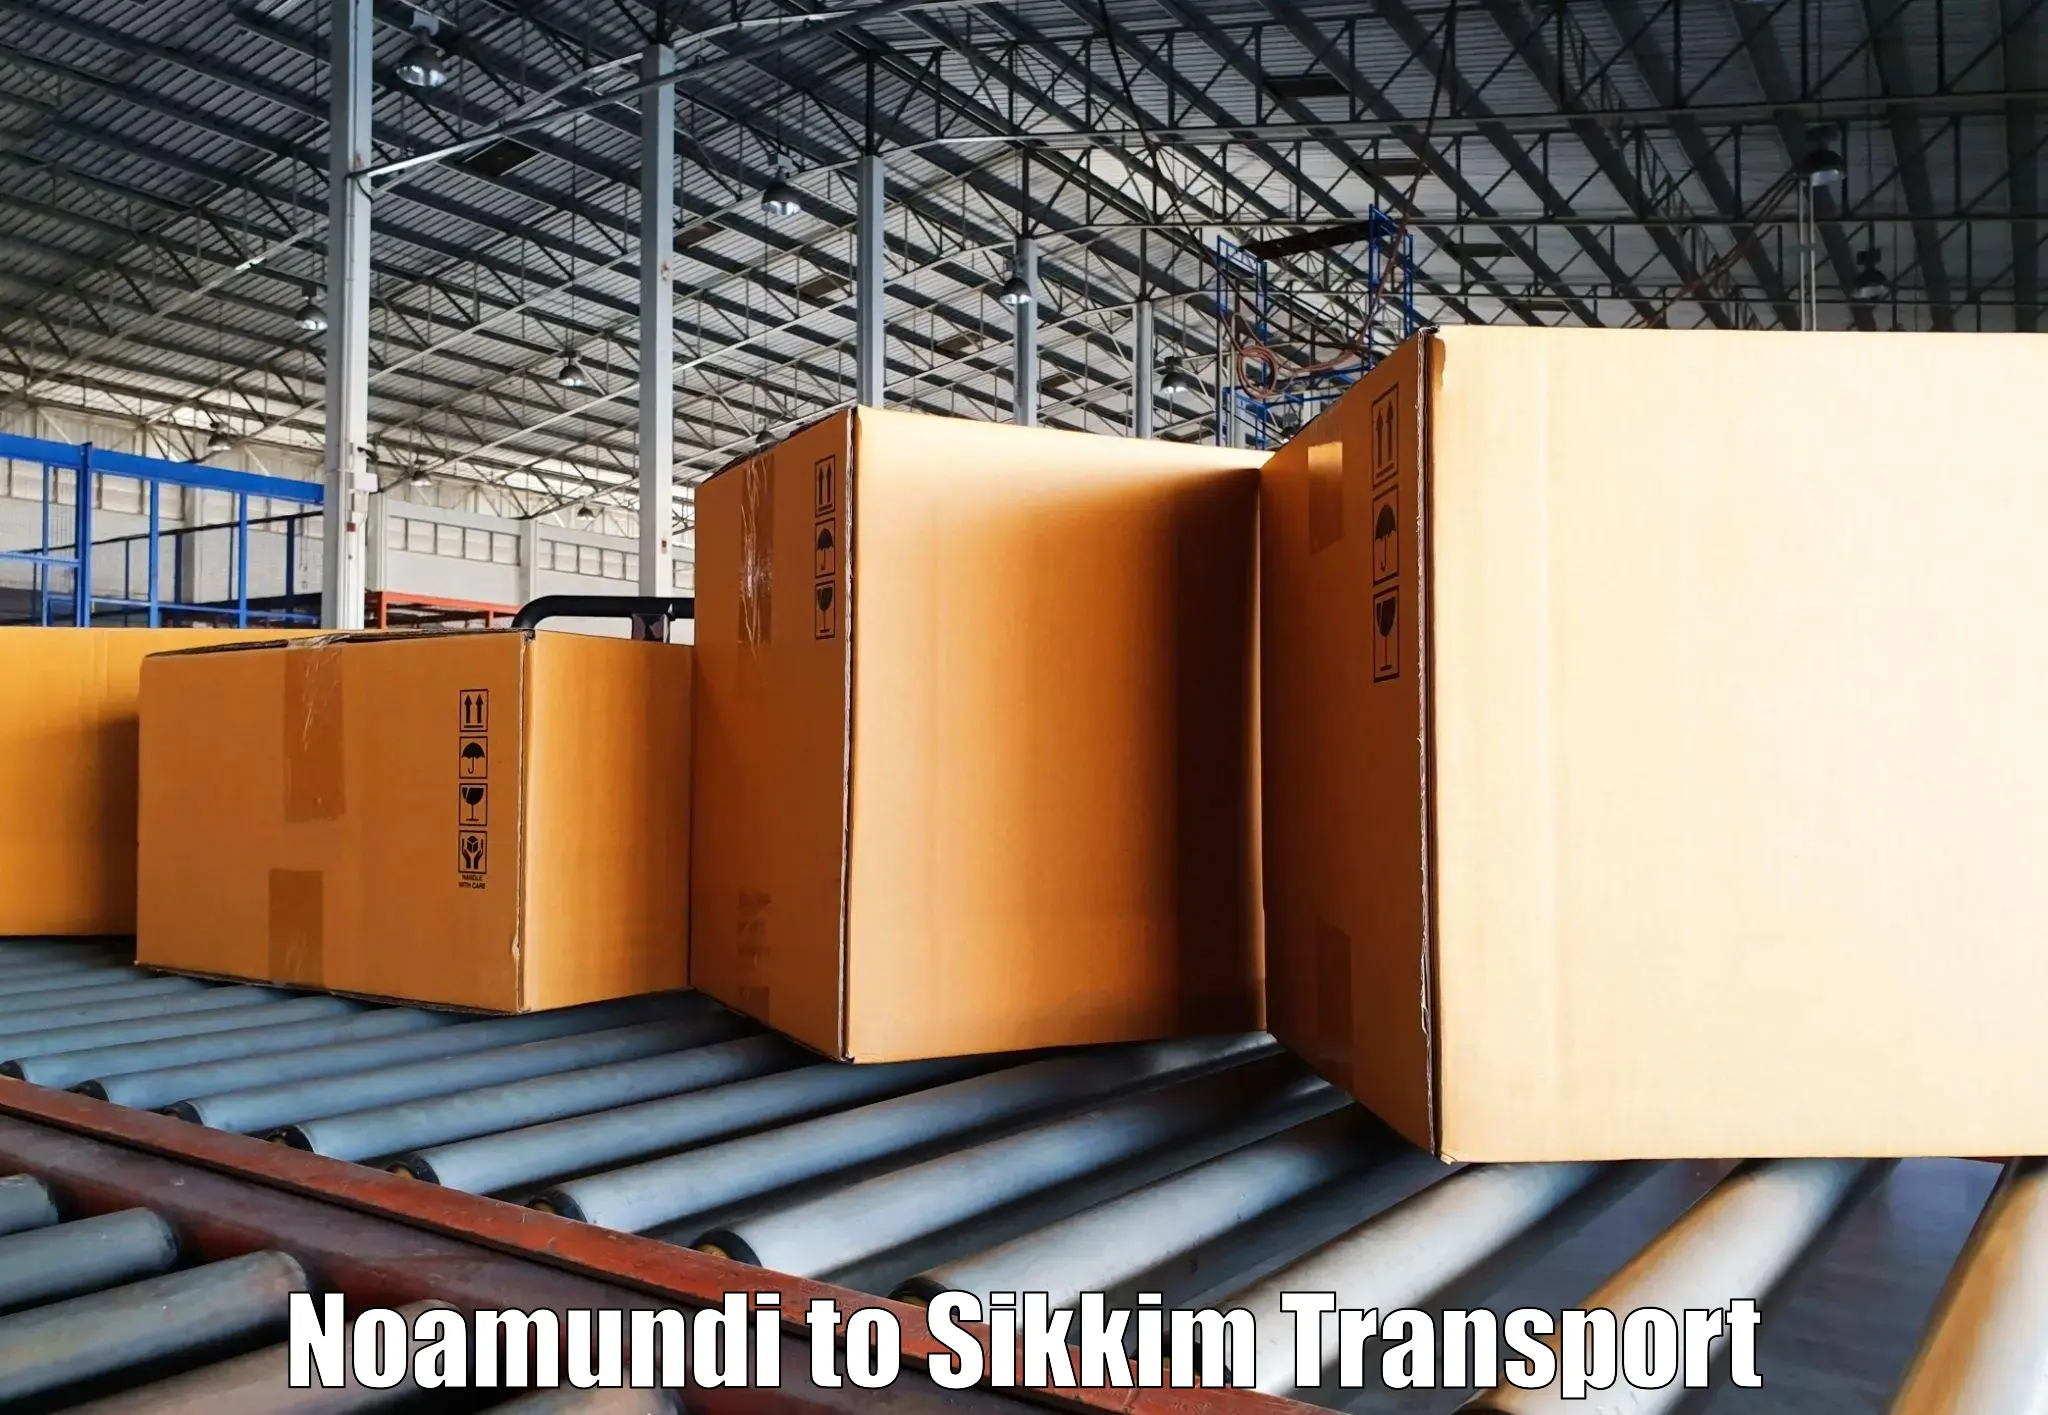 Nearby transport service Noamundi to Mangan